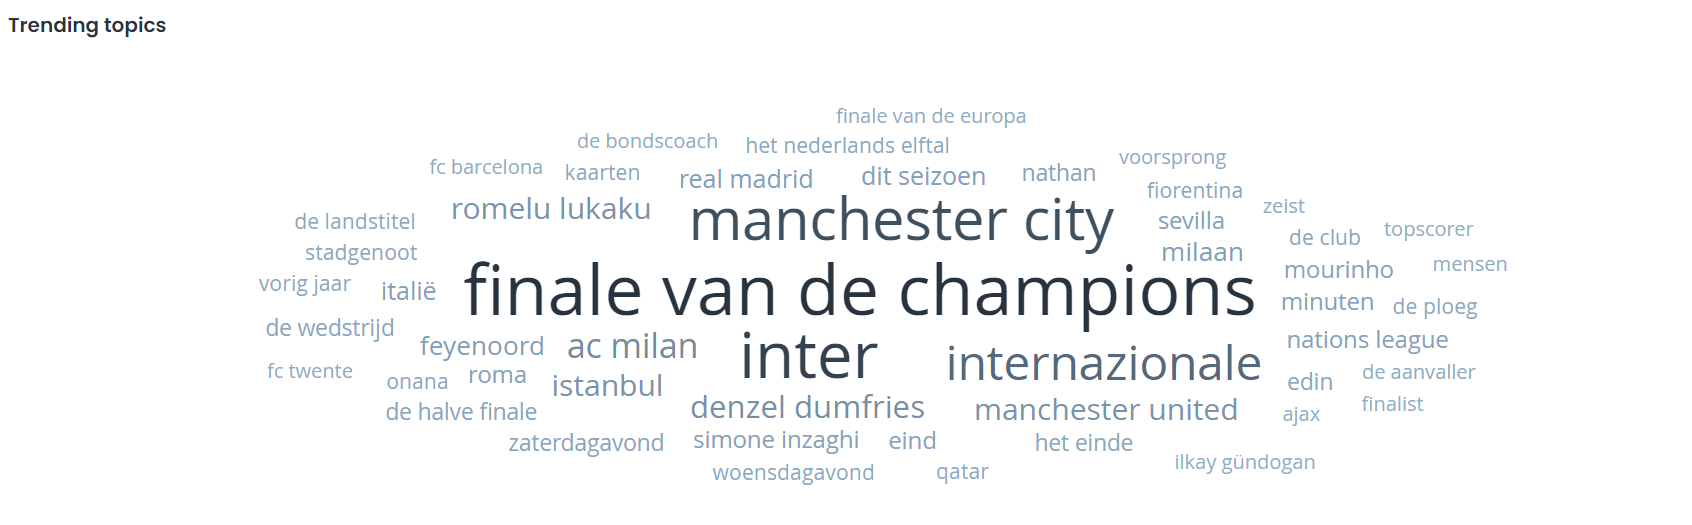 Manchester City gaat de Champions League winnen, volgens Nederland